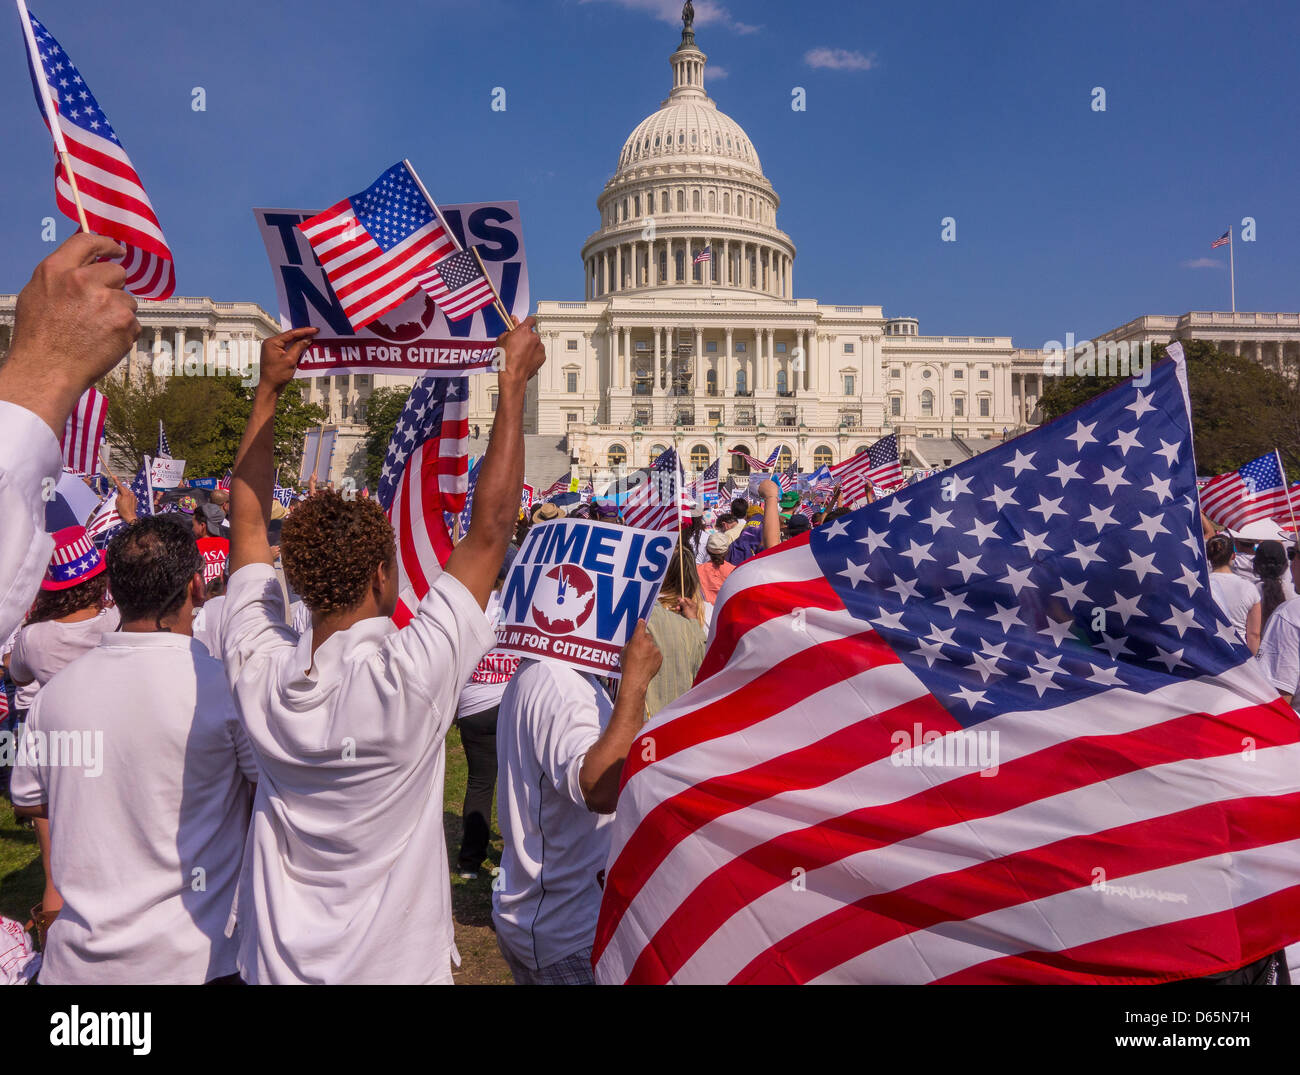 Washington DC, USA. 10 avril 2013. La réforme de l'Immigration rassemblement au Capitole. Crédit : Rob Crandall / Alamy Live News Banque D'Images